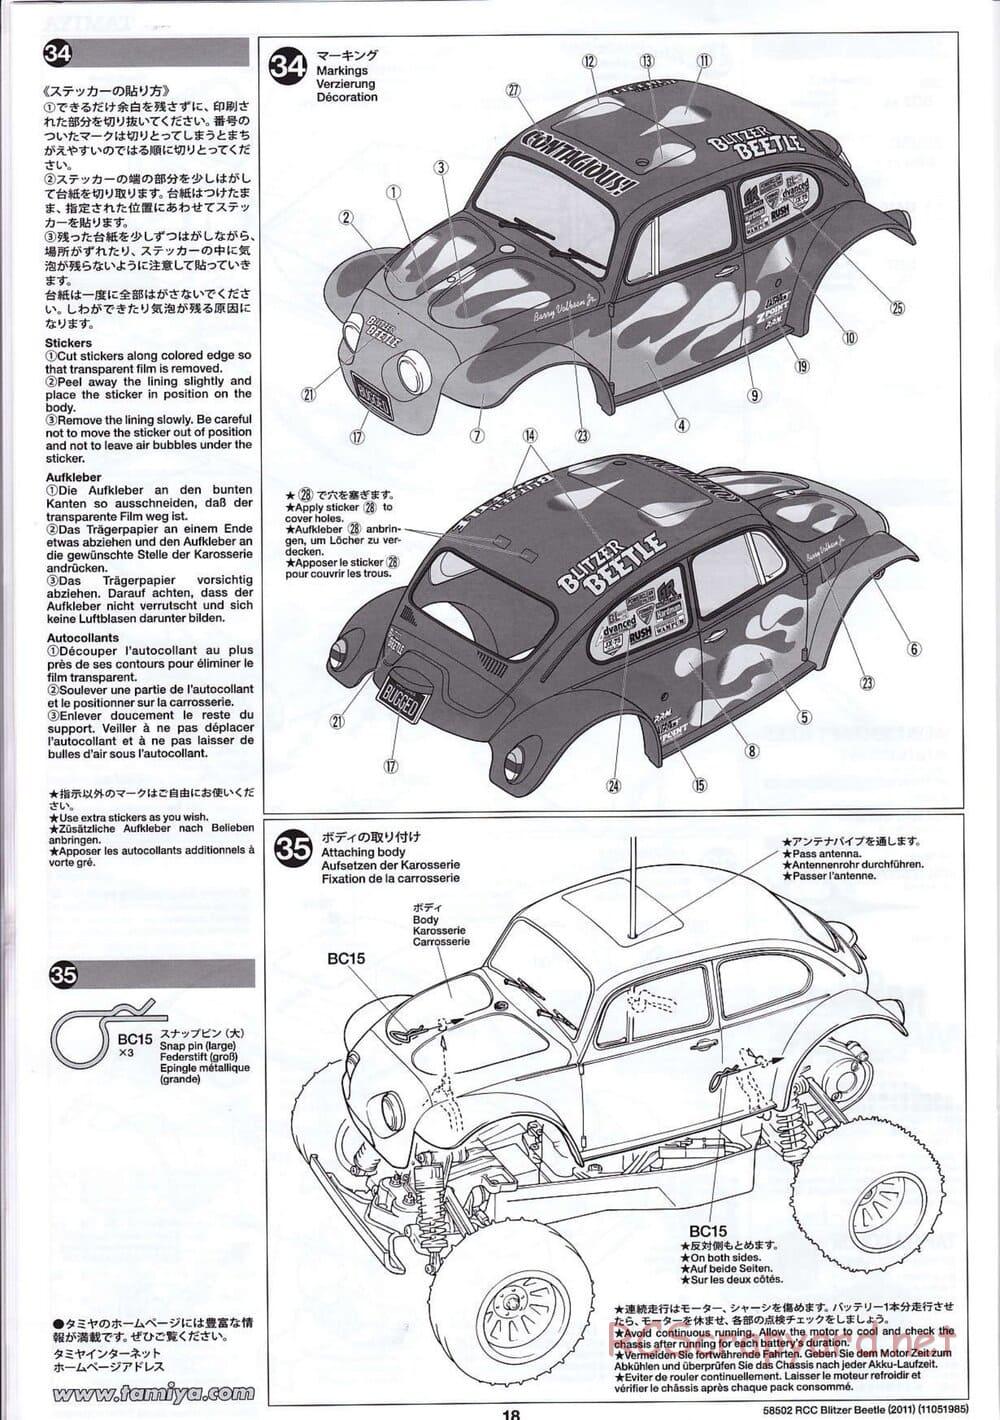 Tamiya - Blitzer Beetle 2011 - FAL Chassis - Manual - Page 18